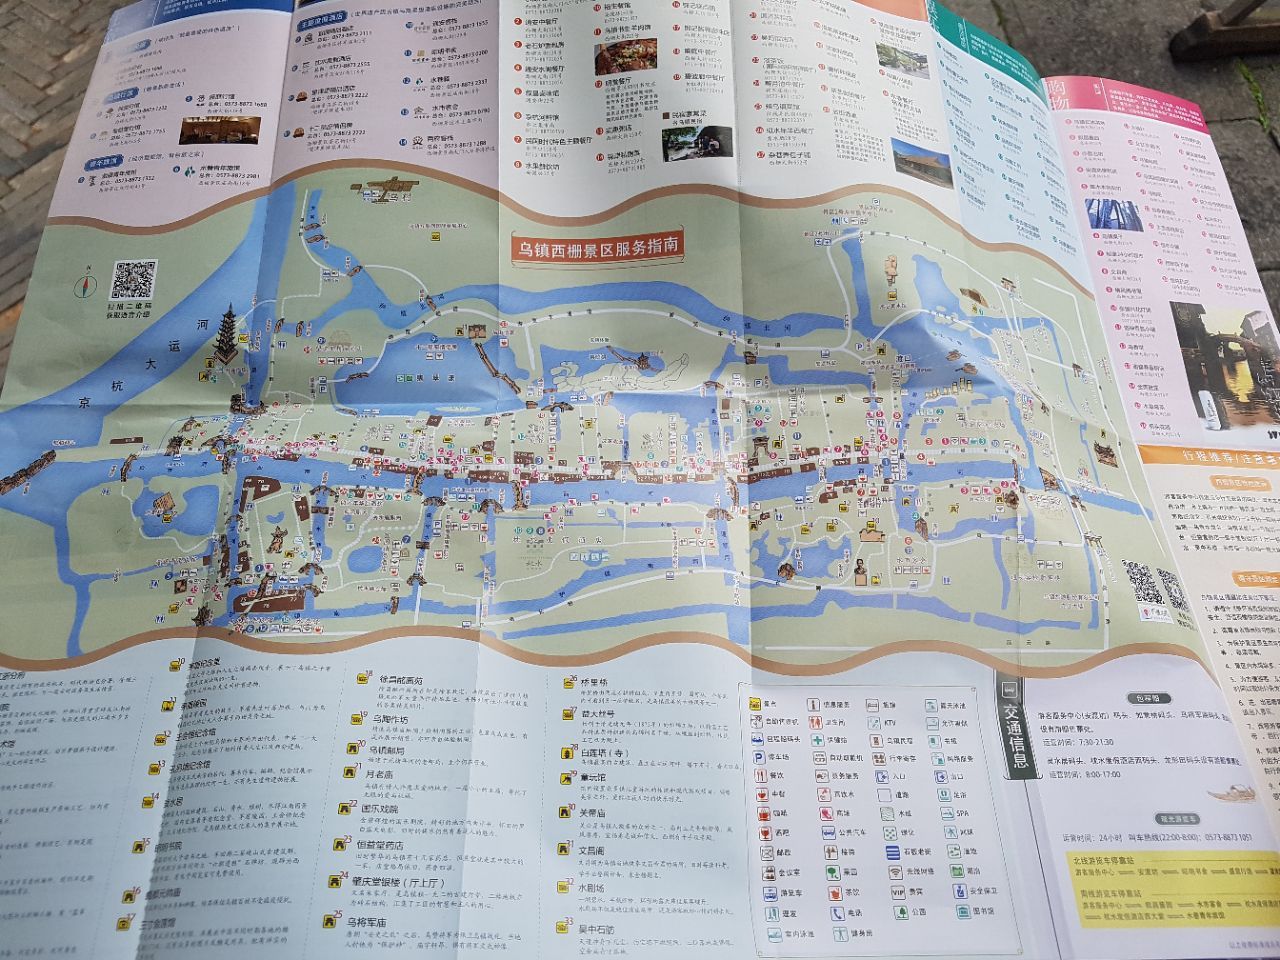 乌镇西栅地图高清版图片